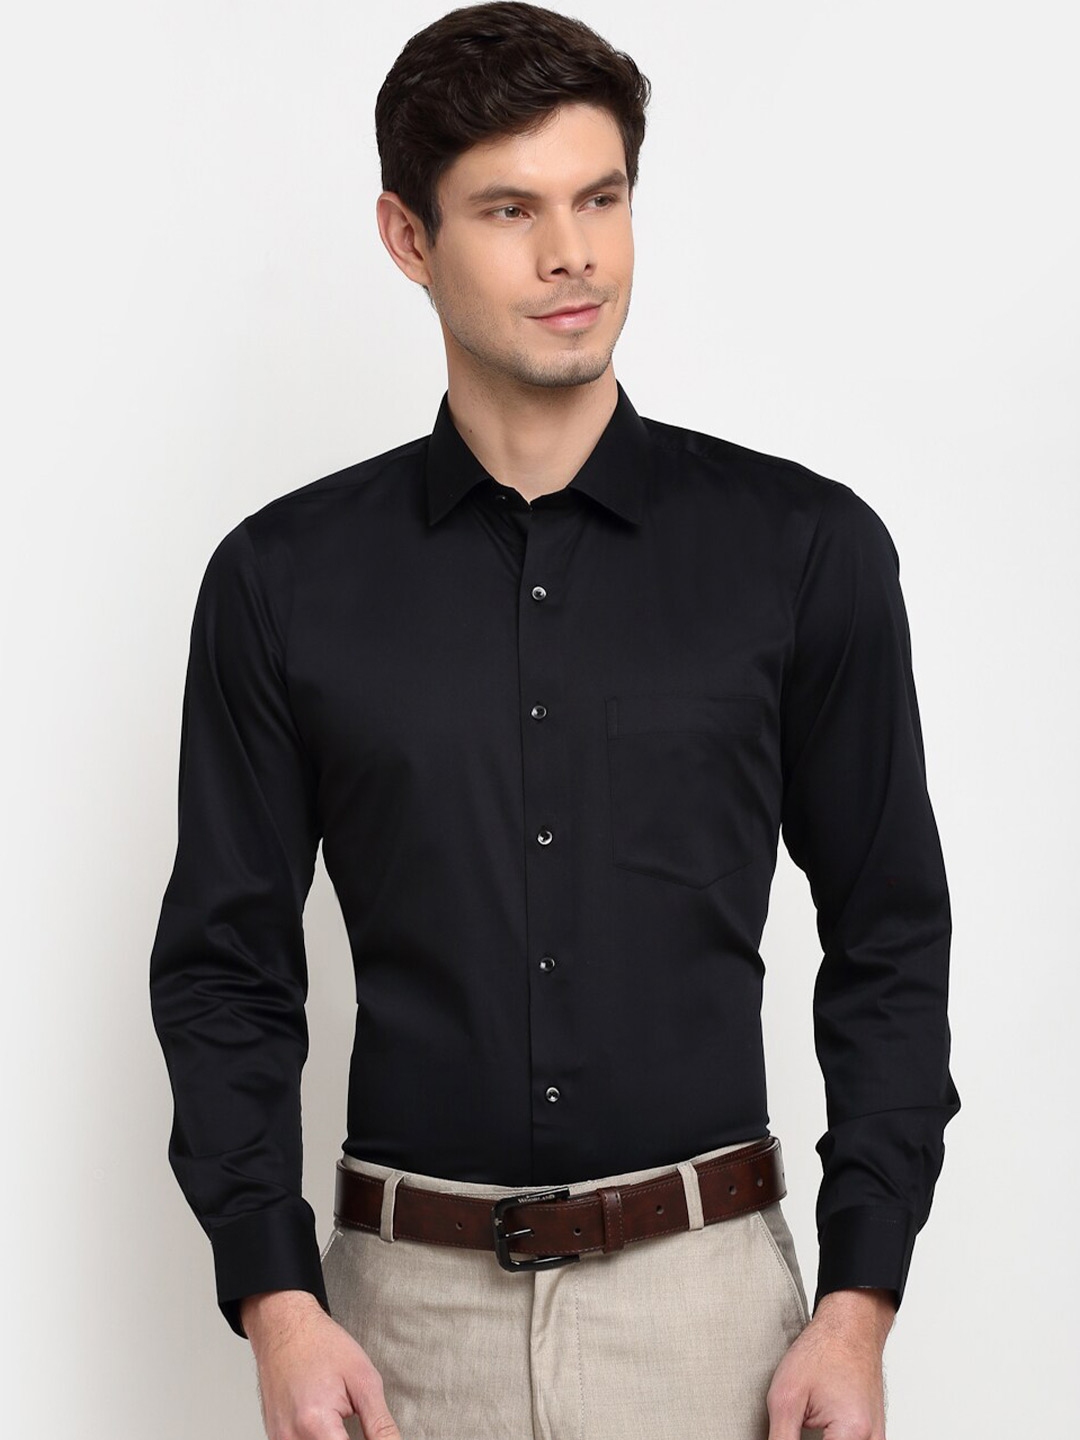 Buy La Mode Men Black Slim Fit Opaque Pure Cotton Formal Shirt - Shirts ...